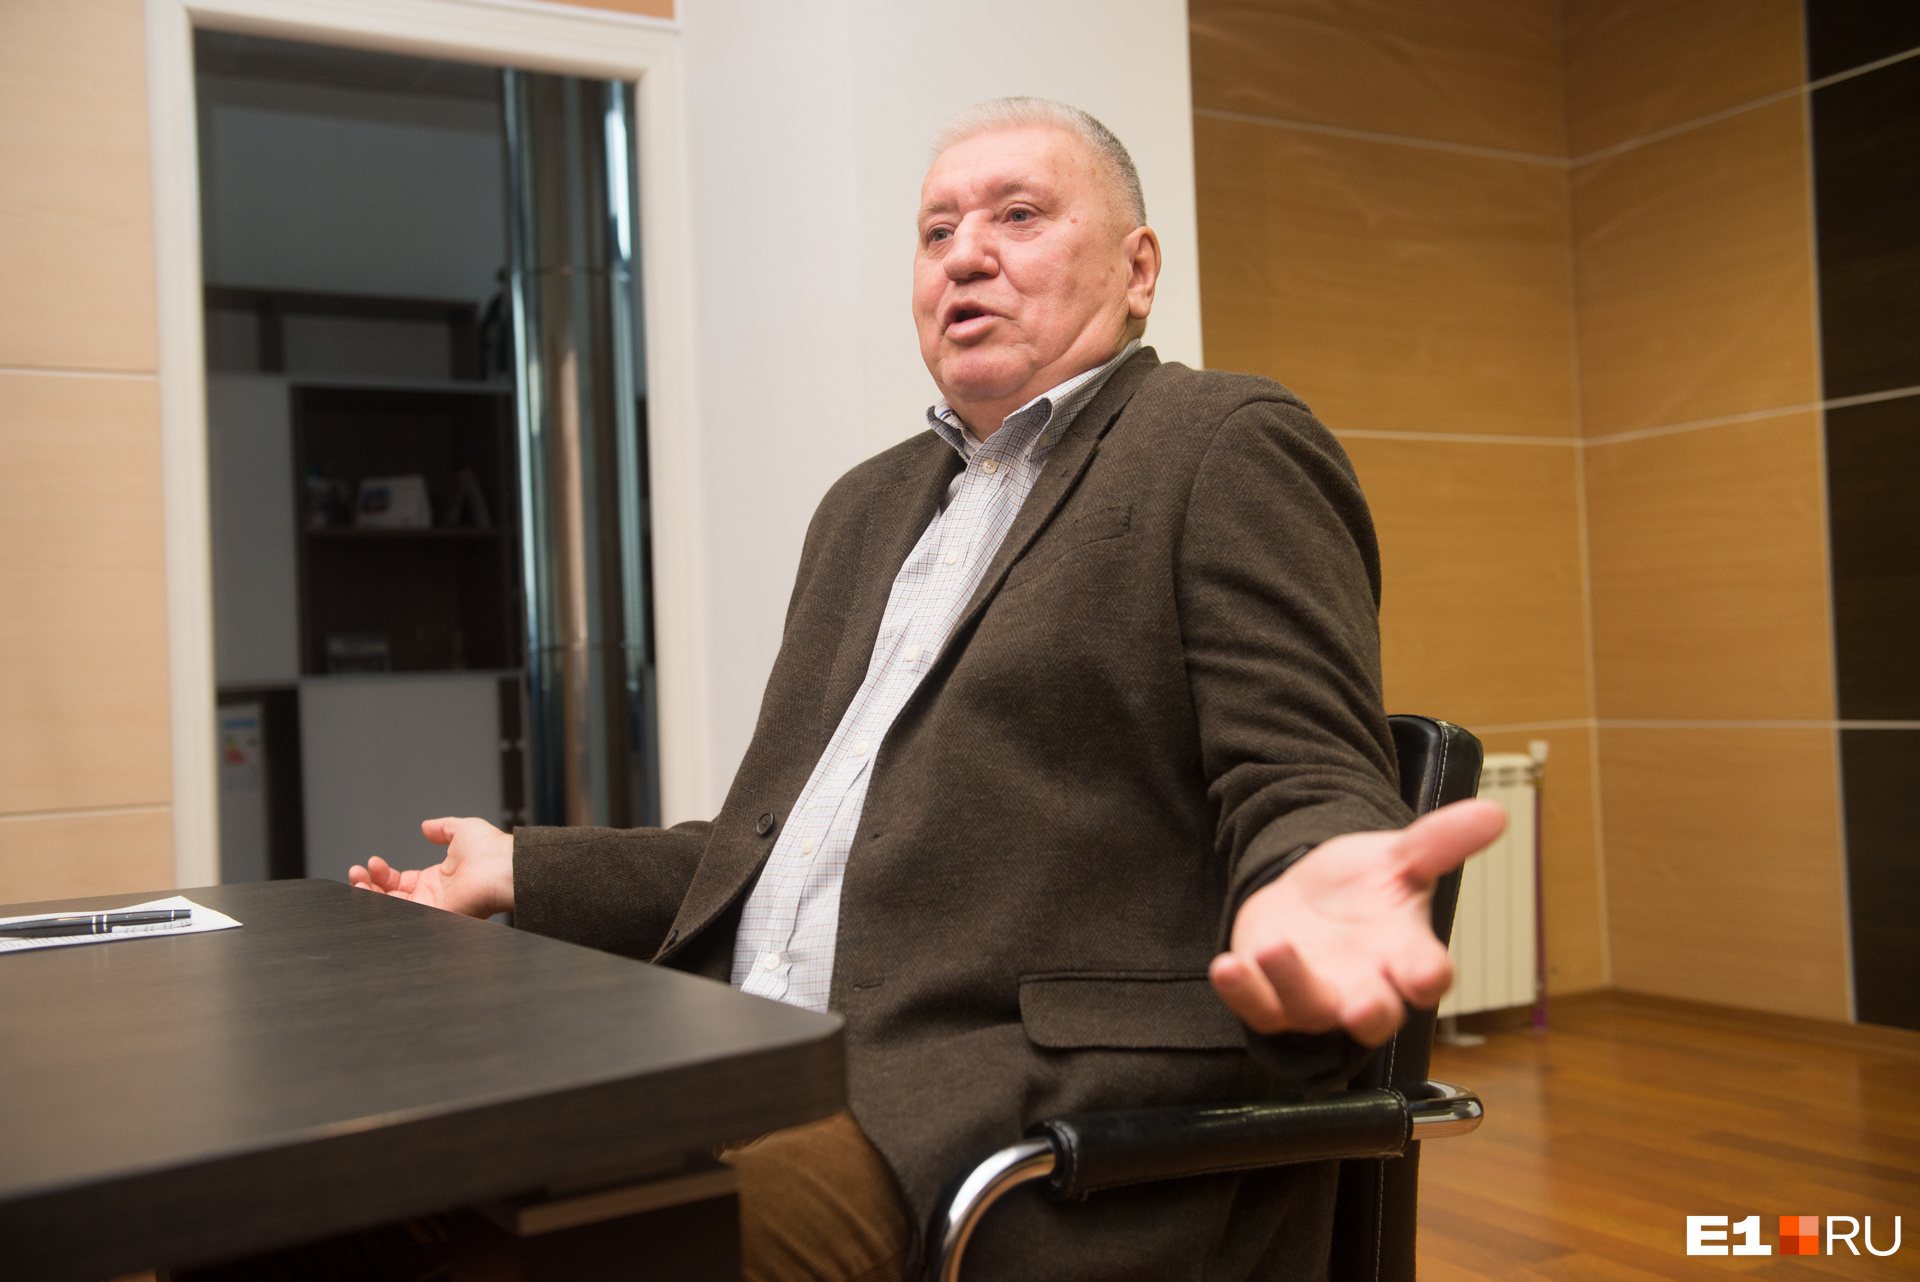 Анатолий Бартенёв уверяет, что дилеры зарабатывают не на железе, а на различных дополнительных услугах